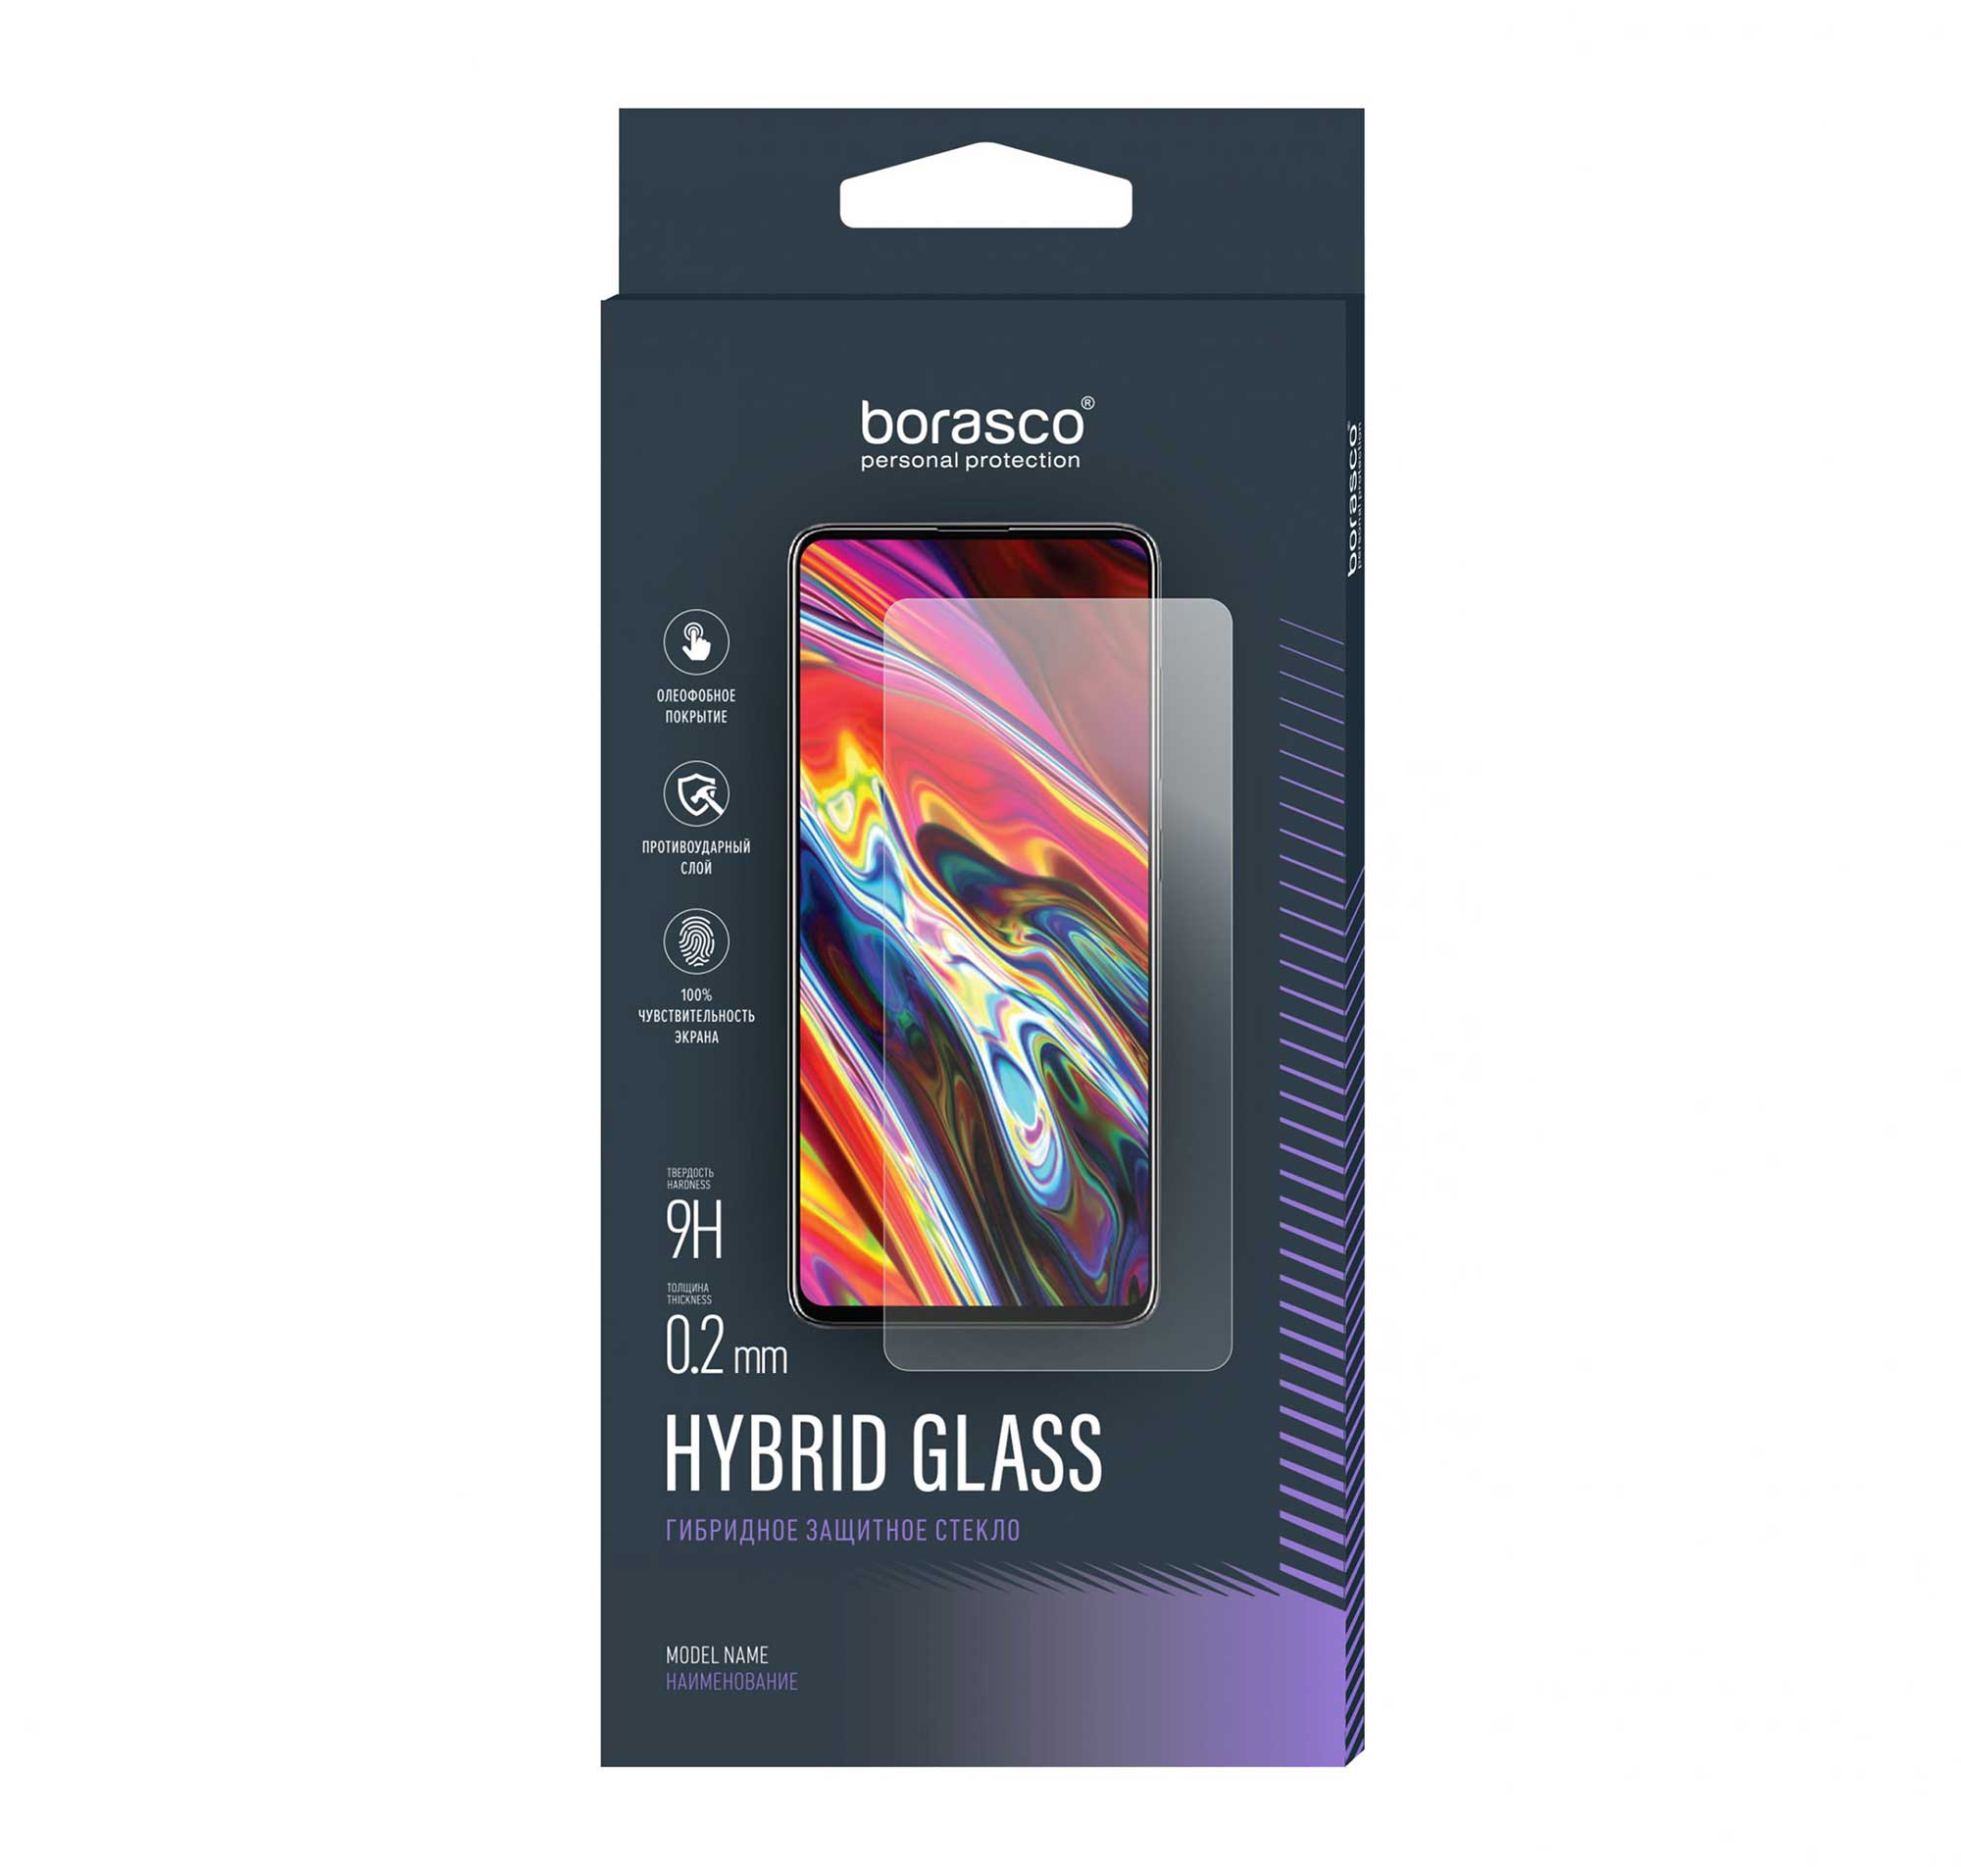 Защитное стекло Hybrid Glass для Google Pixel 4a 5G защитное стекло для смартфона krutoff для google pixel 4a 5g